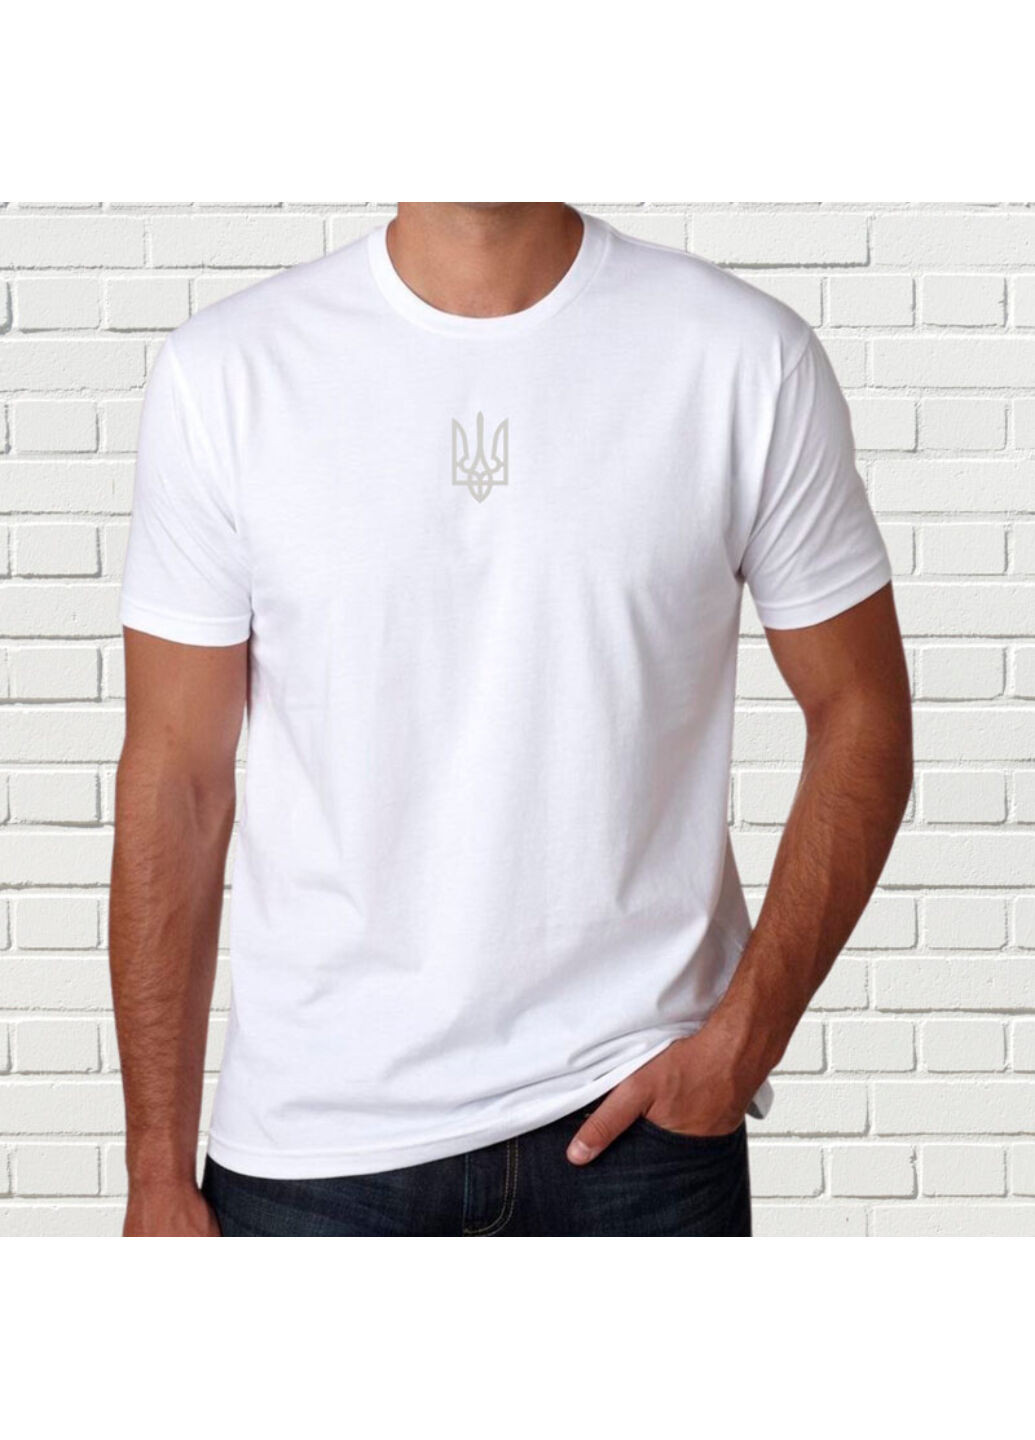 Белая футболка с вышивкой белого трезубца мужская белый xs No Brand